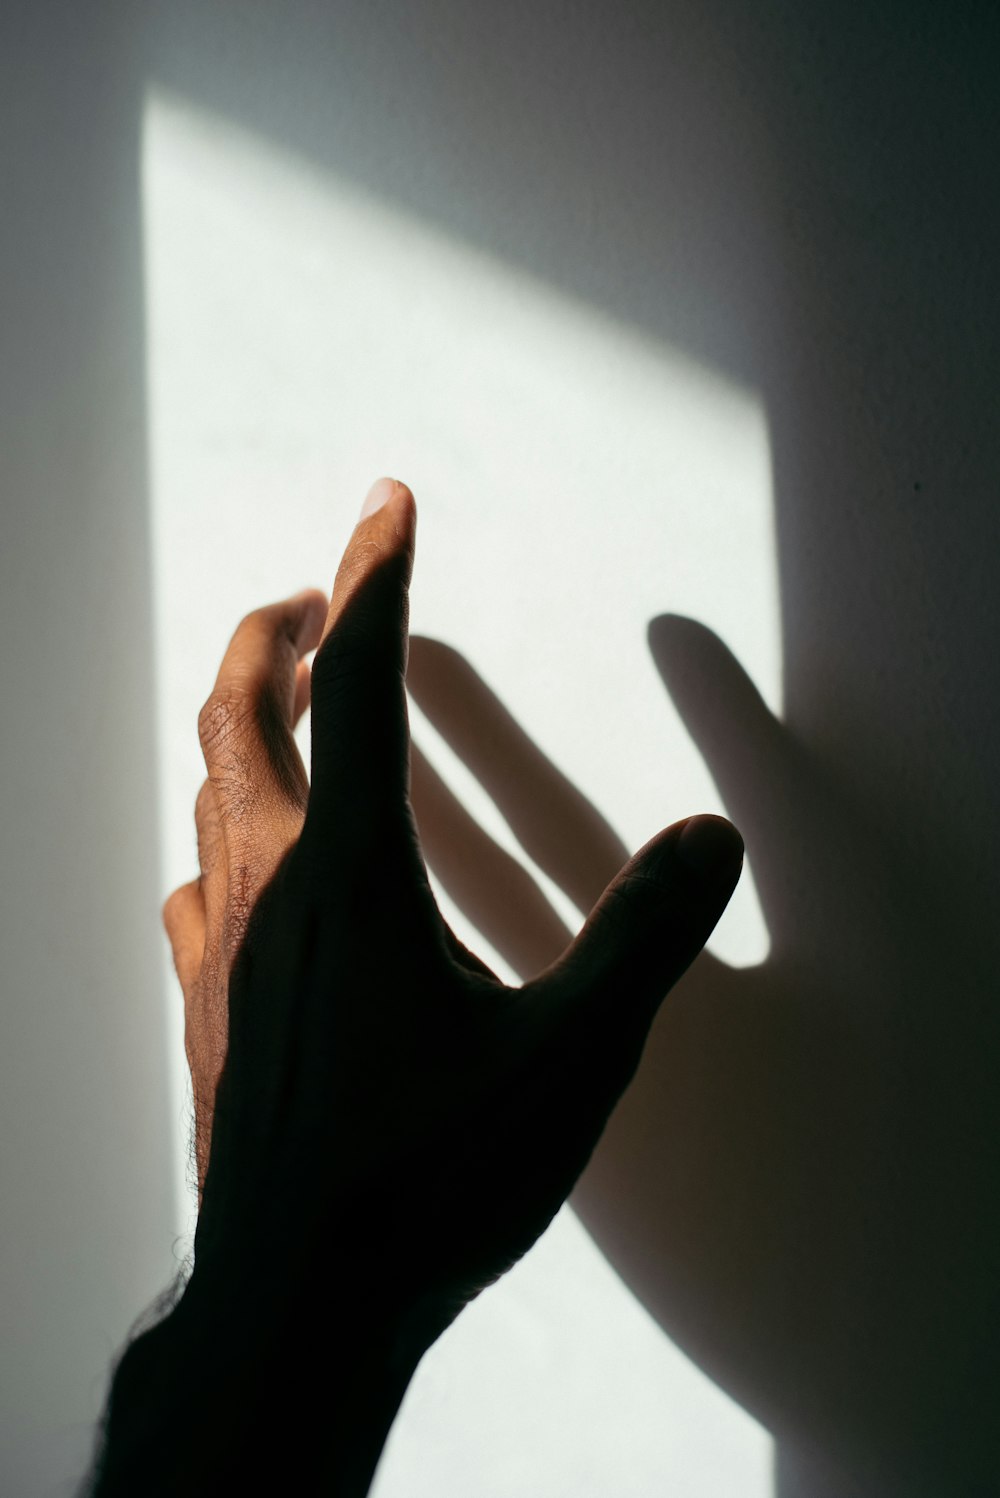 La mano izquierda y la sombra de la persona